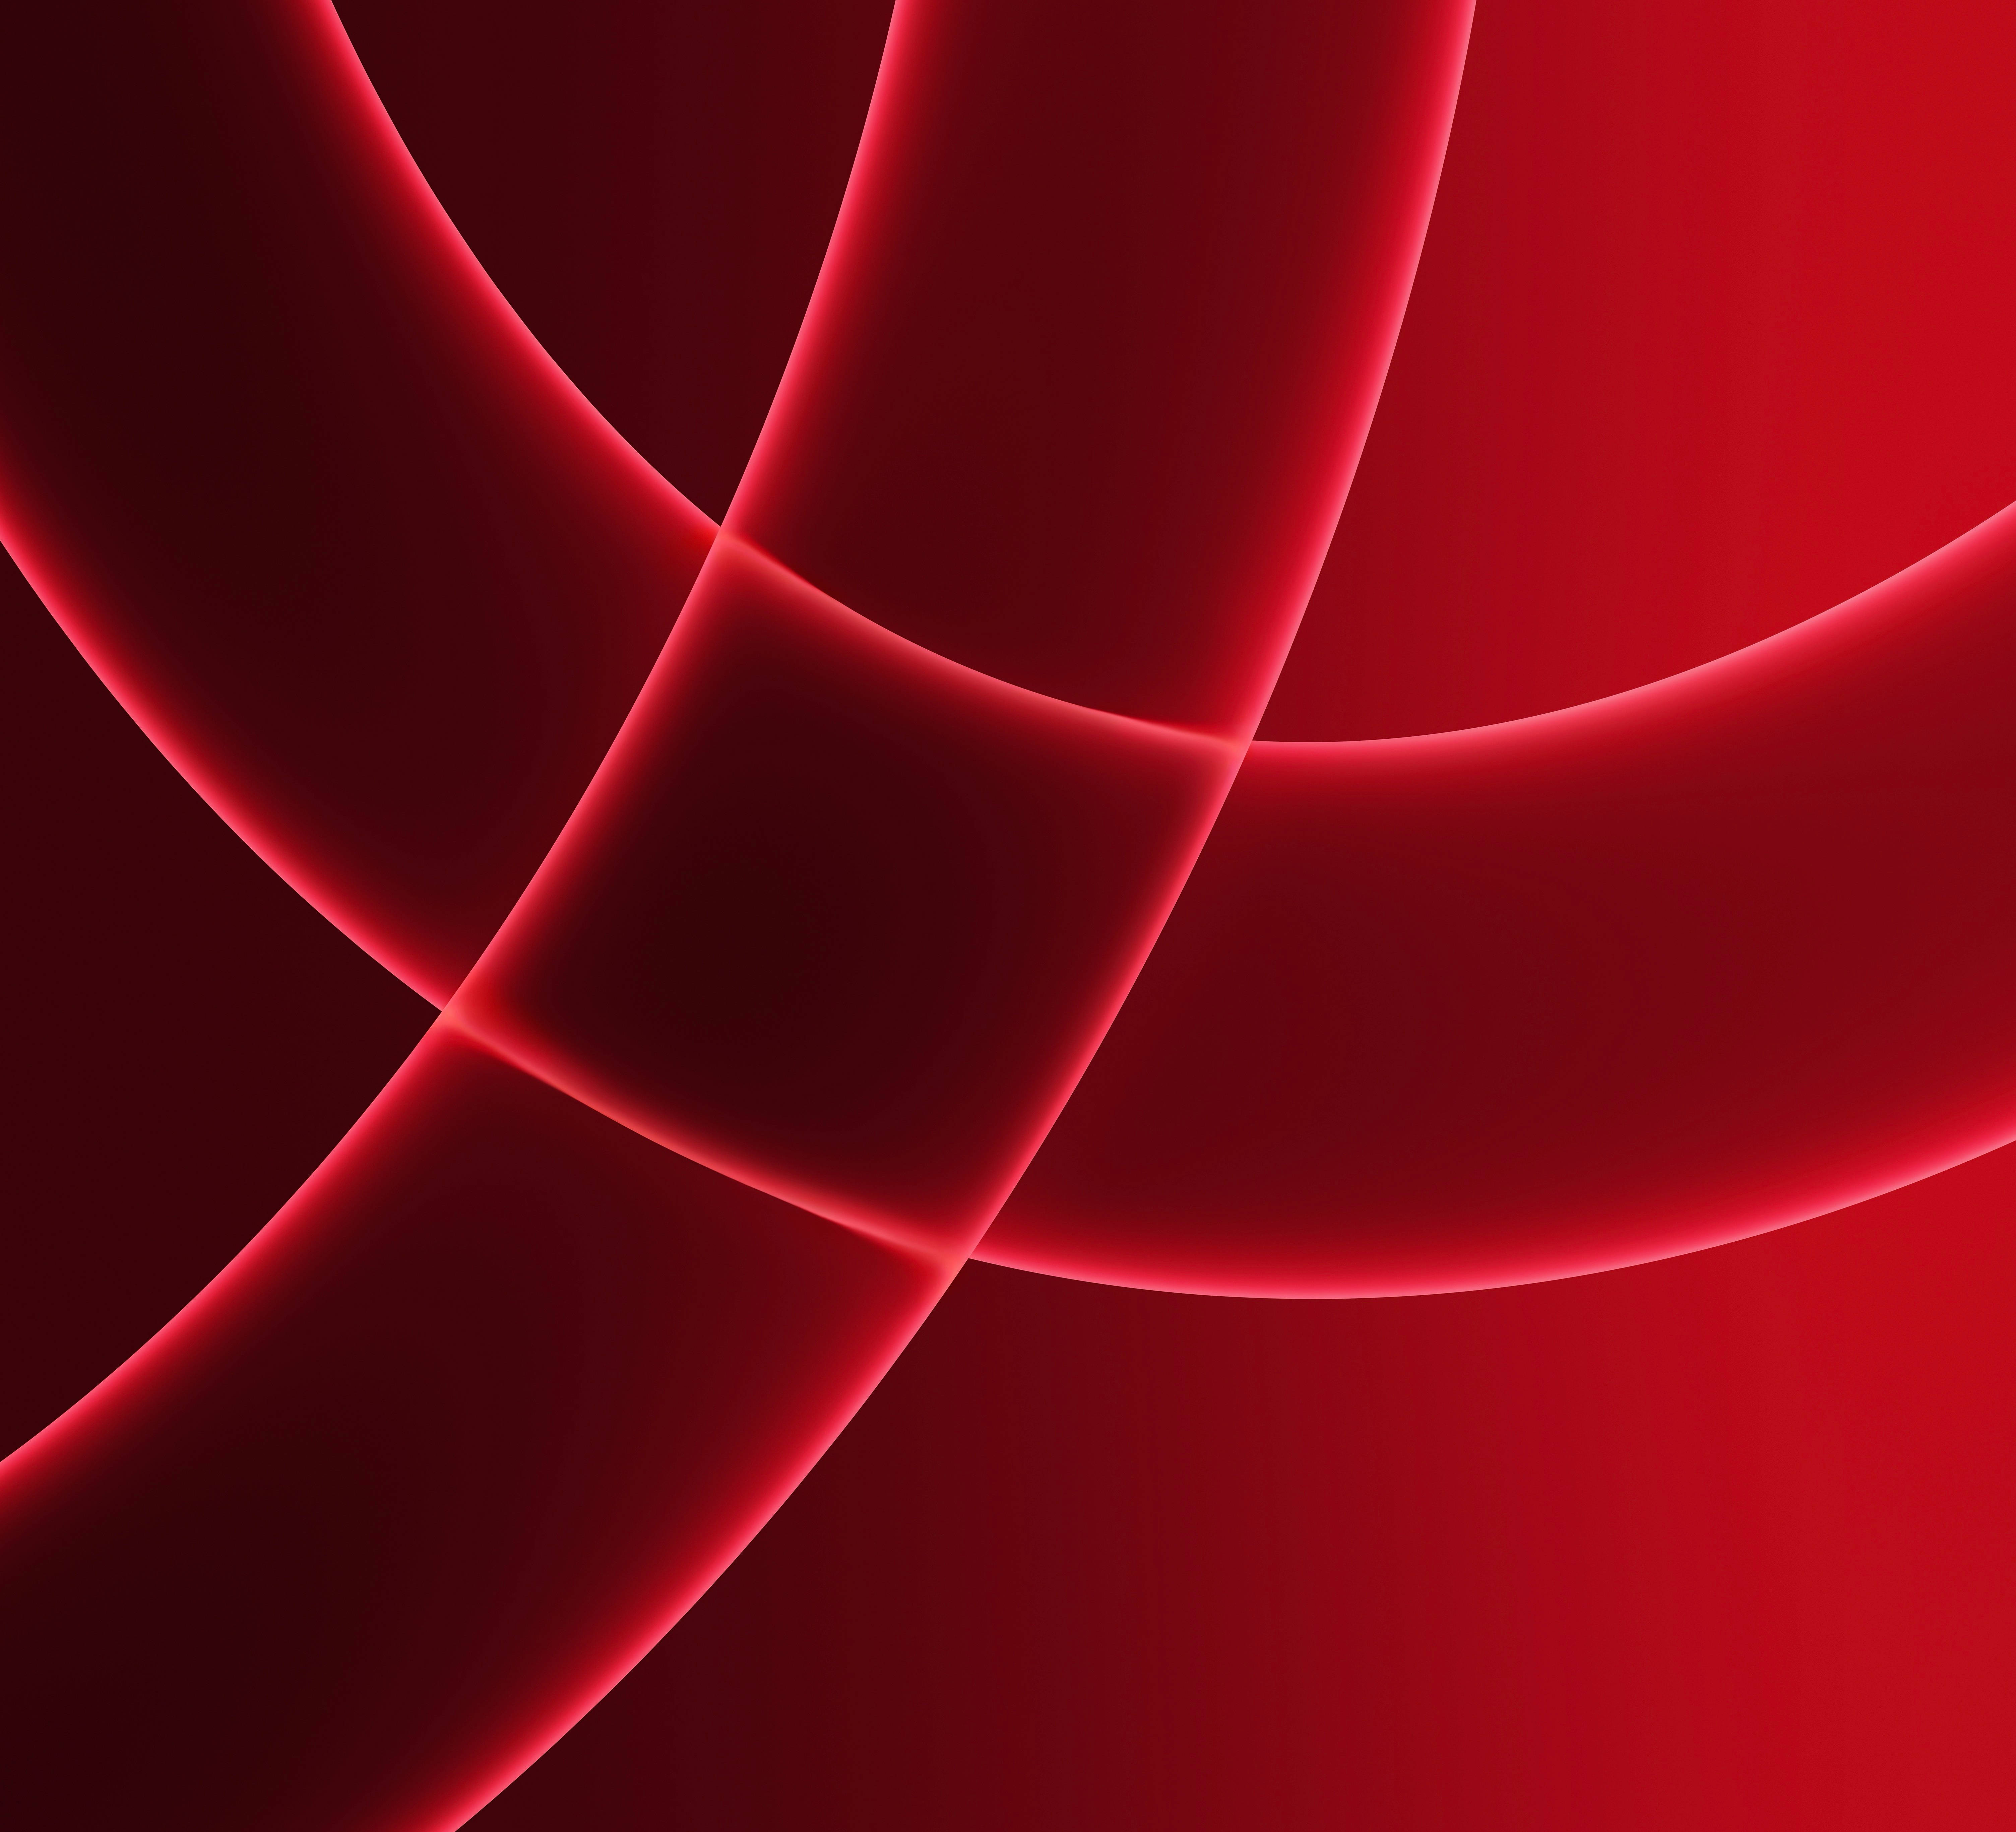 Download Neon Red Lines Imac 4k Wallpaper